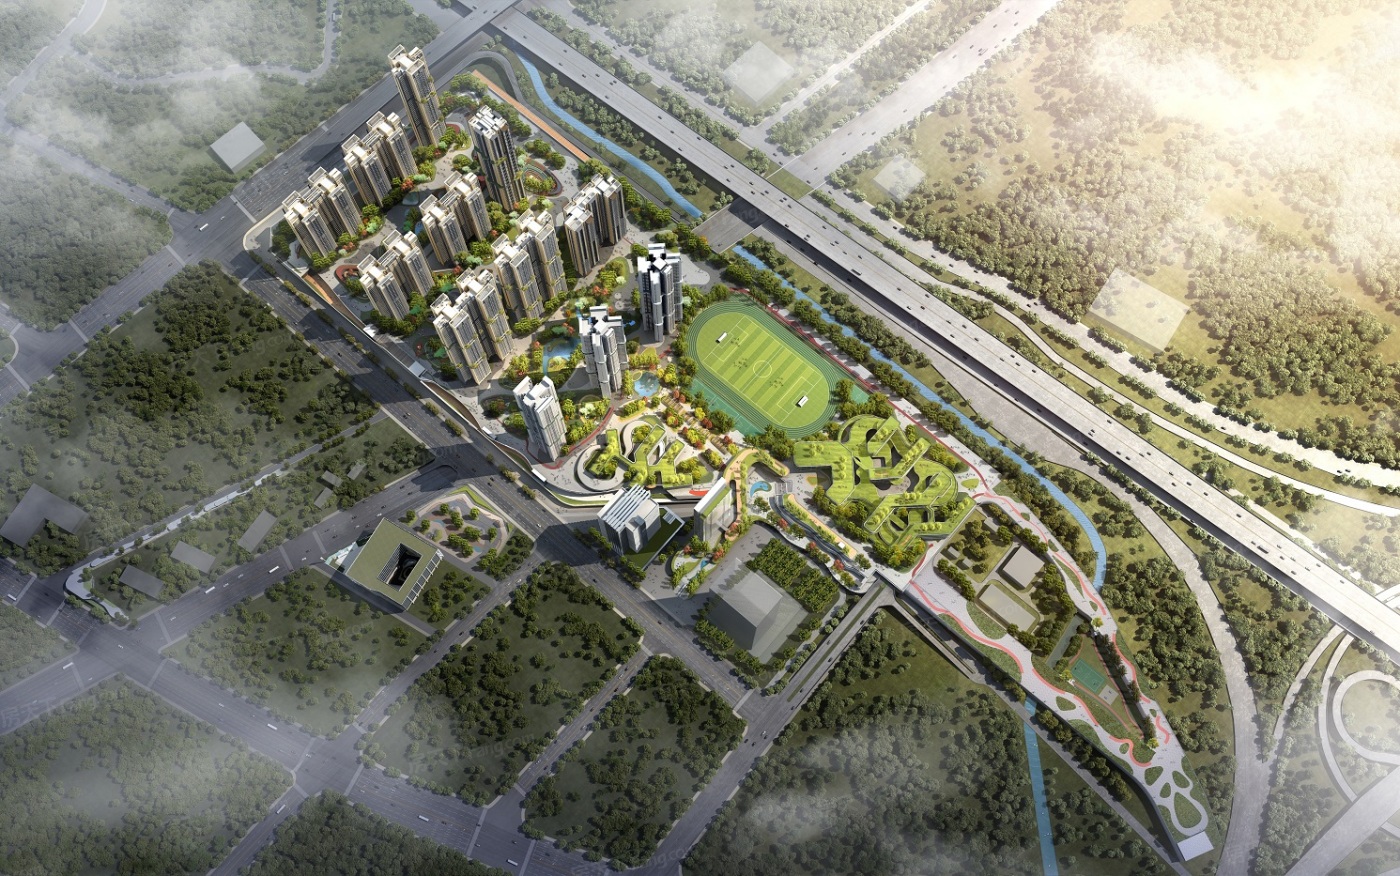 广州船厂城市设计国际竞赛方案首次亮相 / SPARK | 建筑学院